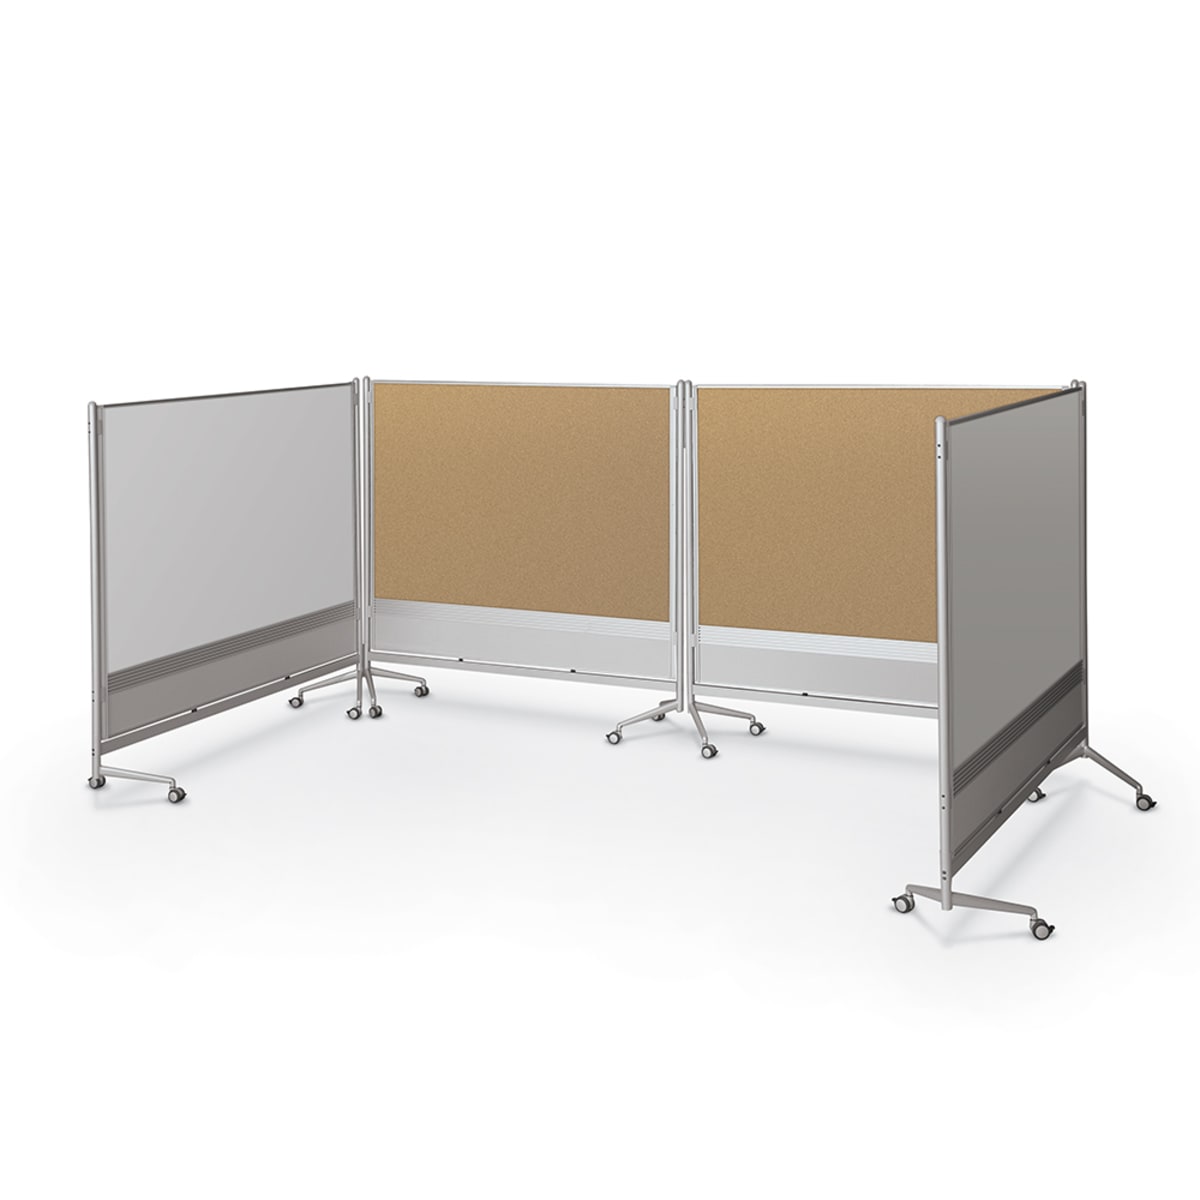 Mooreco Mobile Room Divider & Display Panel Porcelain - Both Sides - 6'H x 6'W (Mooreco 661AG-DD) - SchoolOutlet